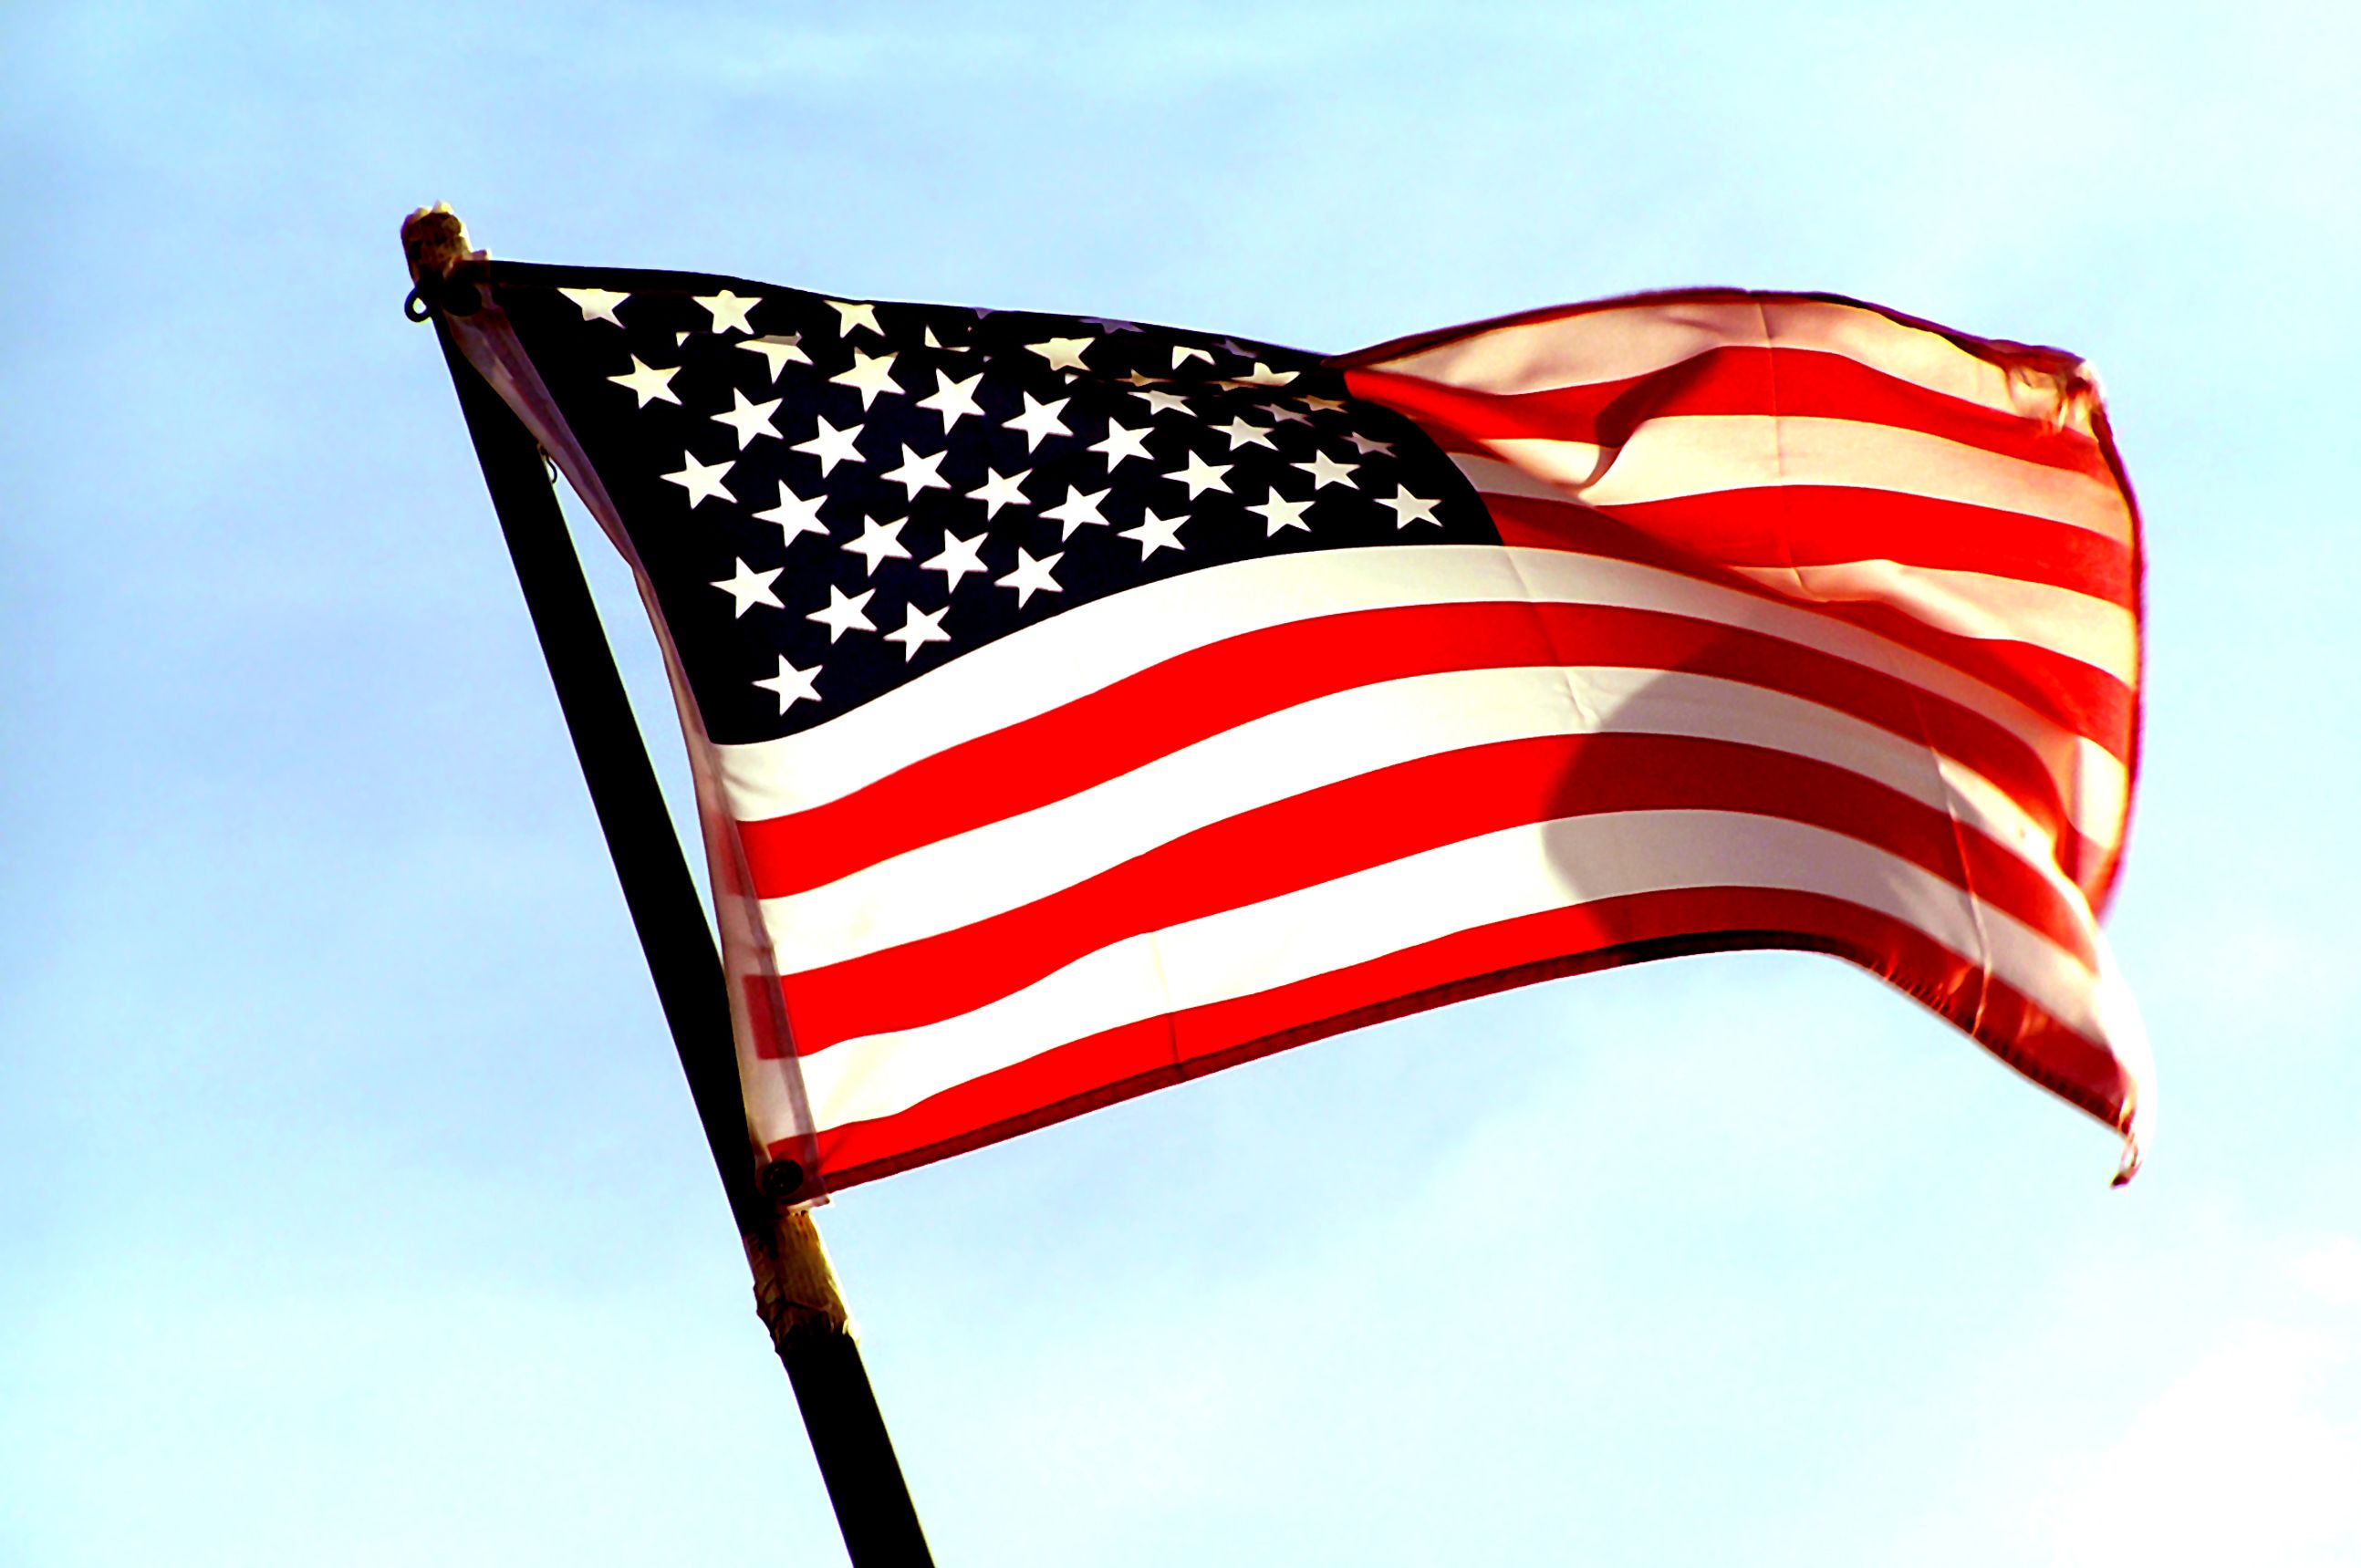 PowerPoint với nền lá cờ Mỹ - Tạo của bạn PowerPoint thật đặc biệt với các mẫu PowerPoint với nền lá cờ Mỹ. Với sự phối hợp giữa màu sắc của lá cờ Mỹ và chất lượng PowerPoint chuyên nghiệp, bài thuyết trình của bạn sẽ trở nên chuyên nghiệp, thu hút và tương tác hơn bao giờ hết.